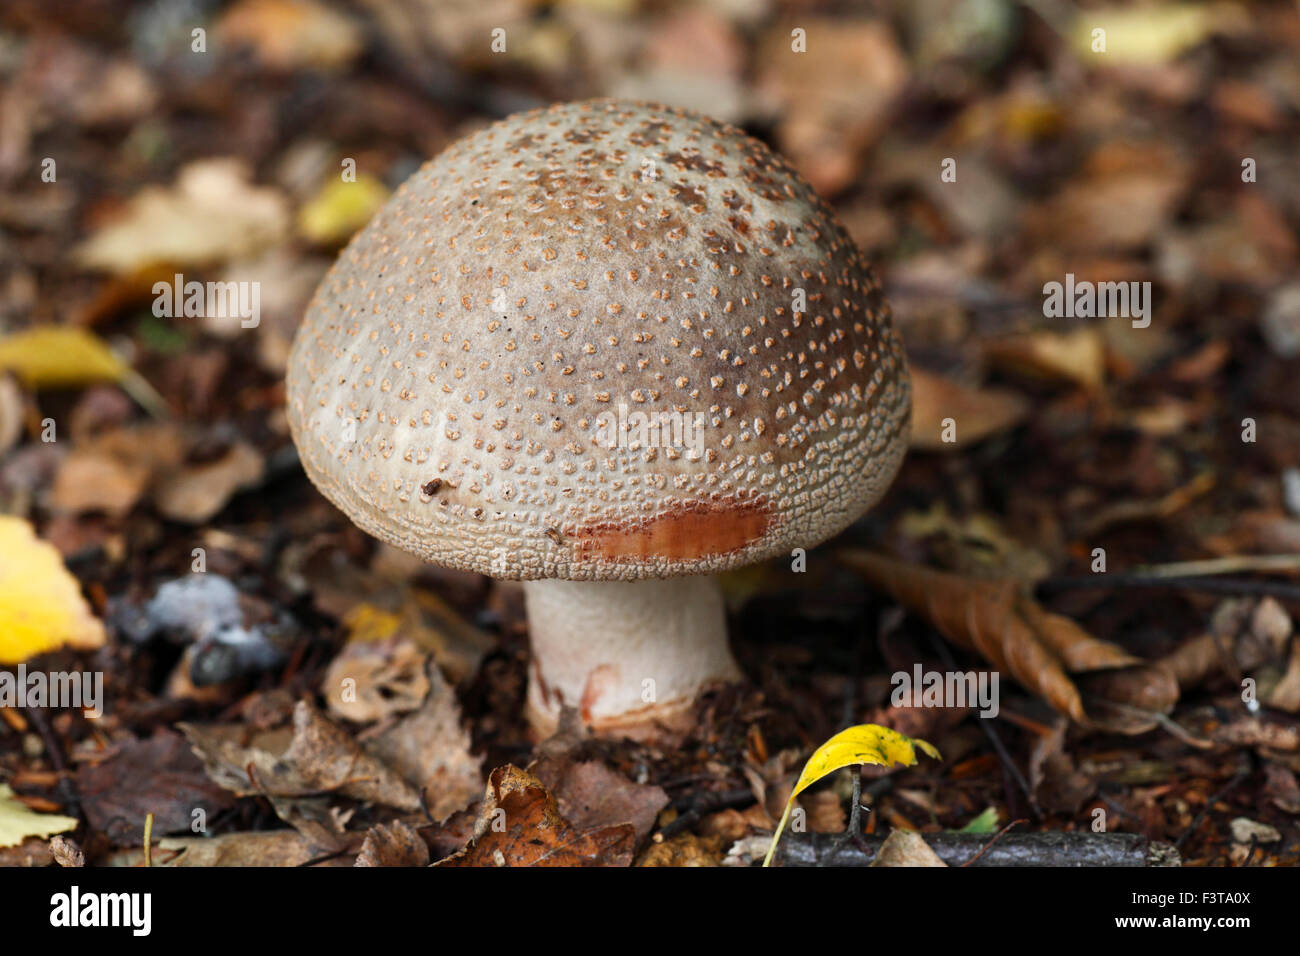 The Blusher mushroom, Amanita rubescens. Stock Photo